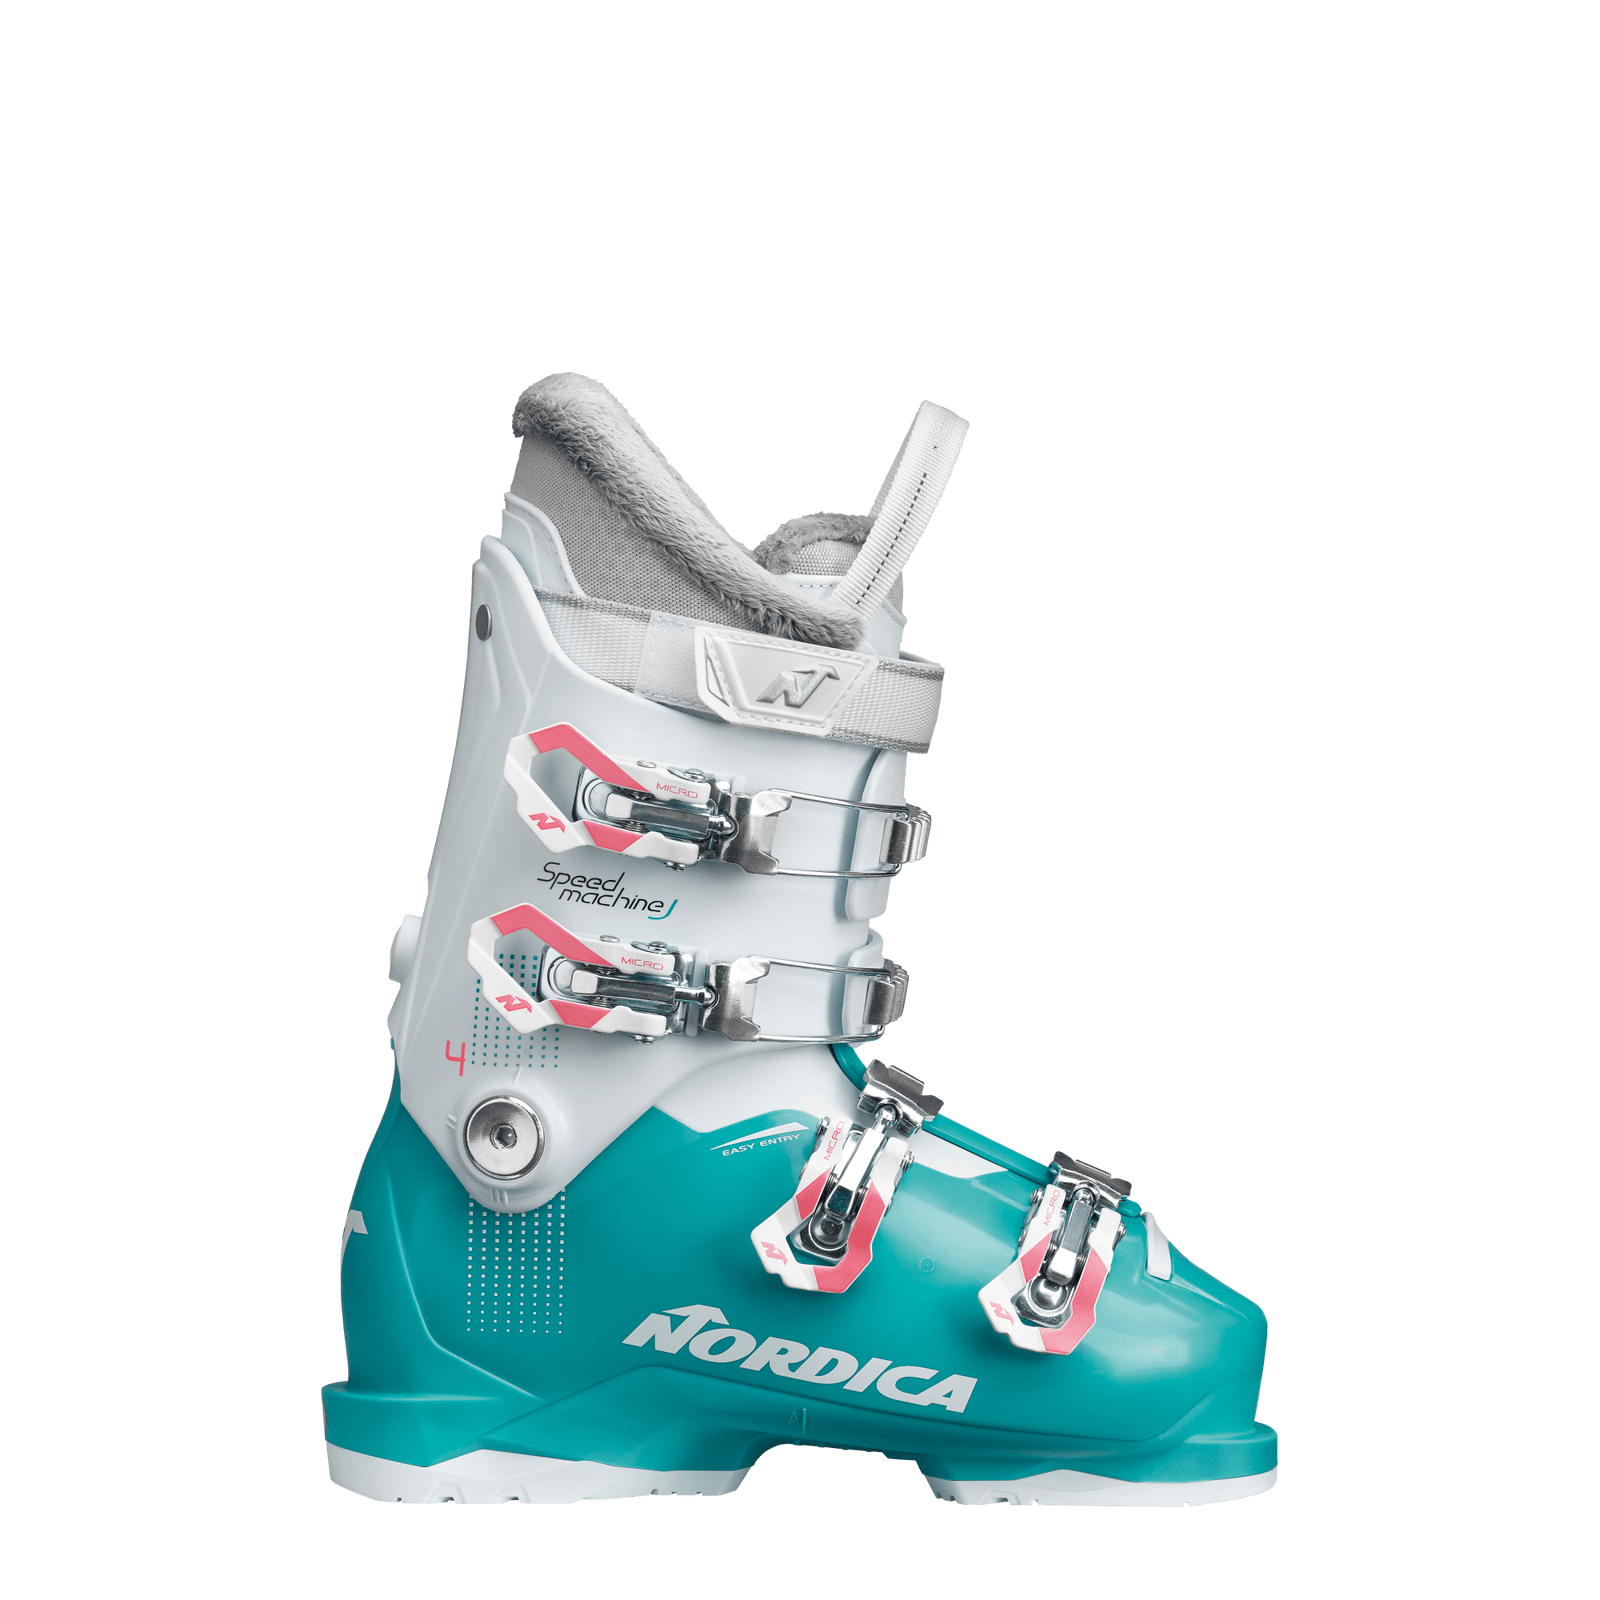 Buy Nordica Skis, Nordica Ski Boots